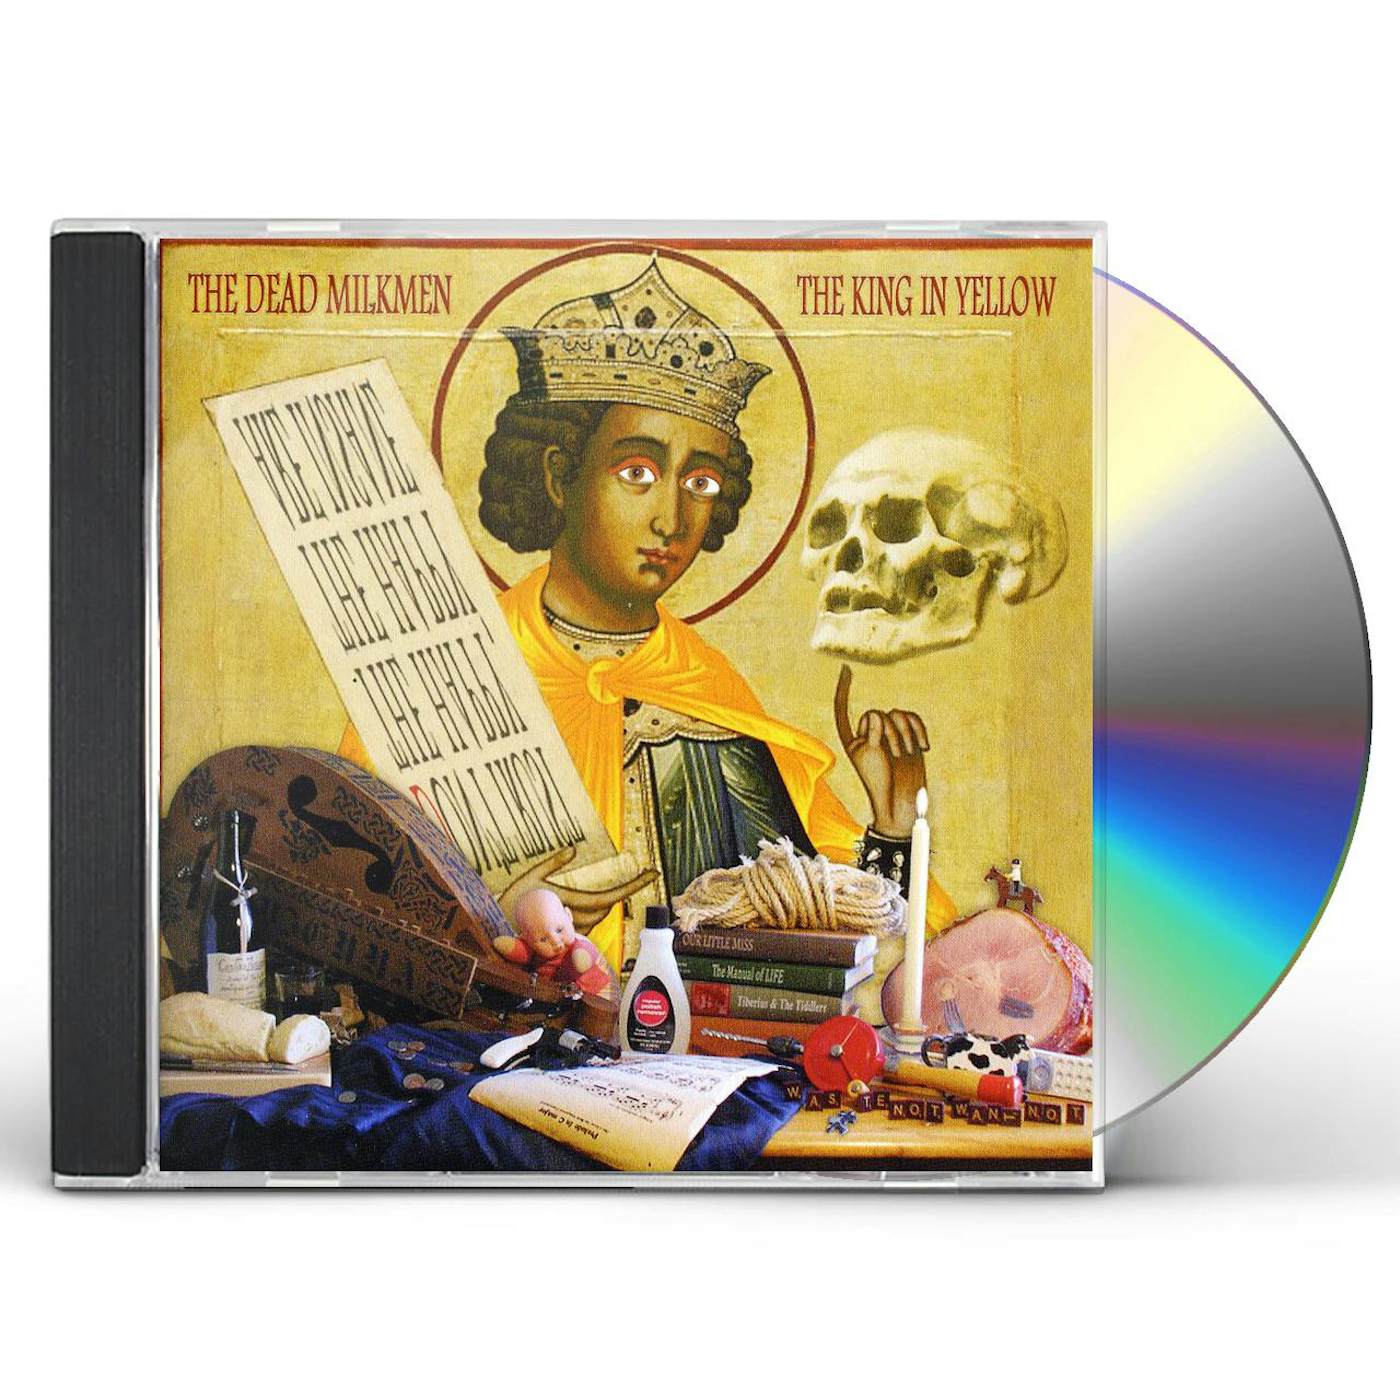 The Dead Milkmen KING IN YELLOW CD